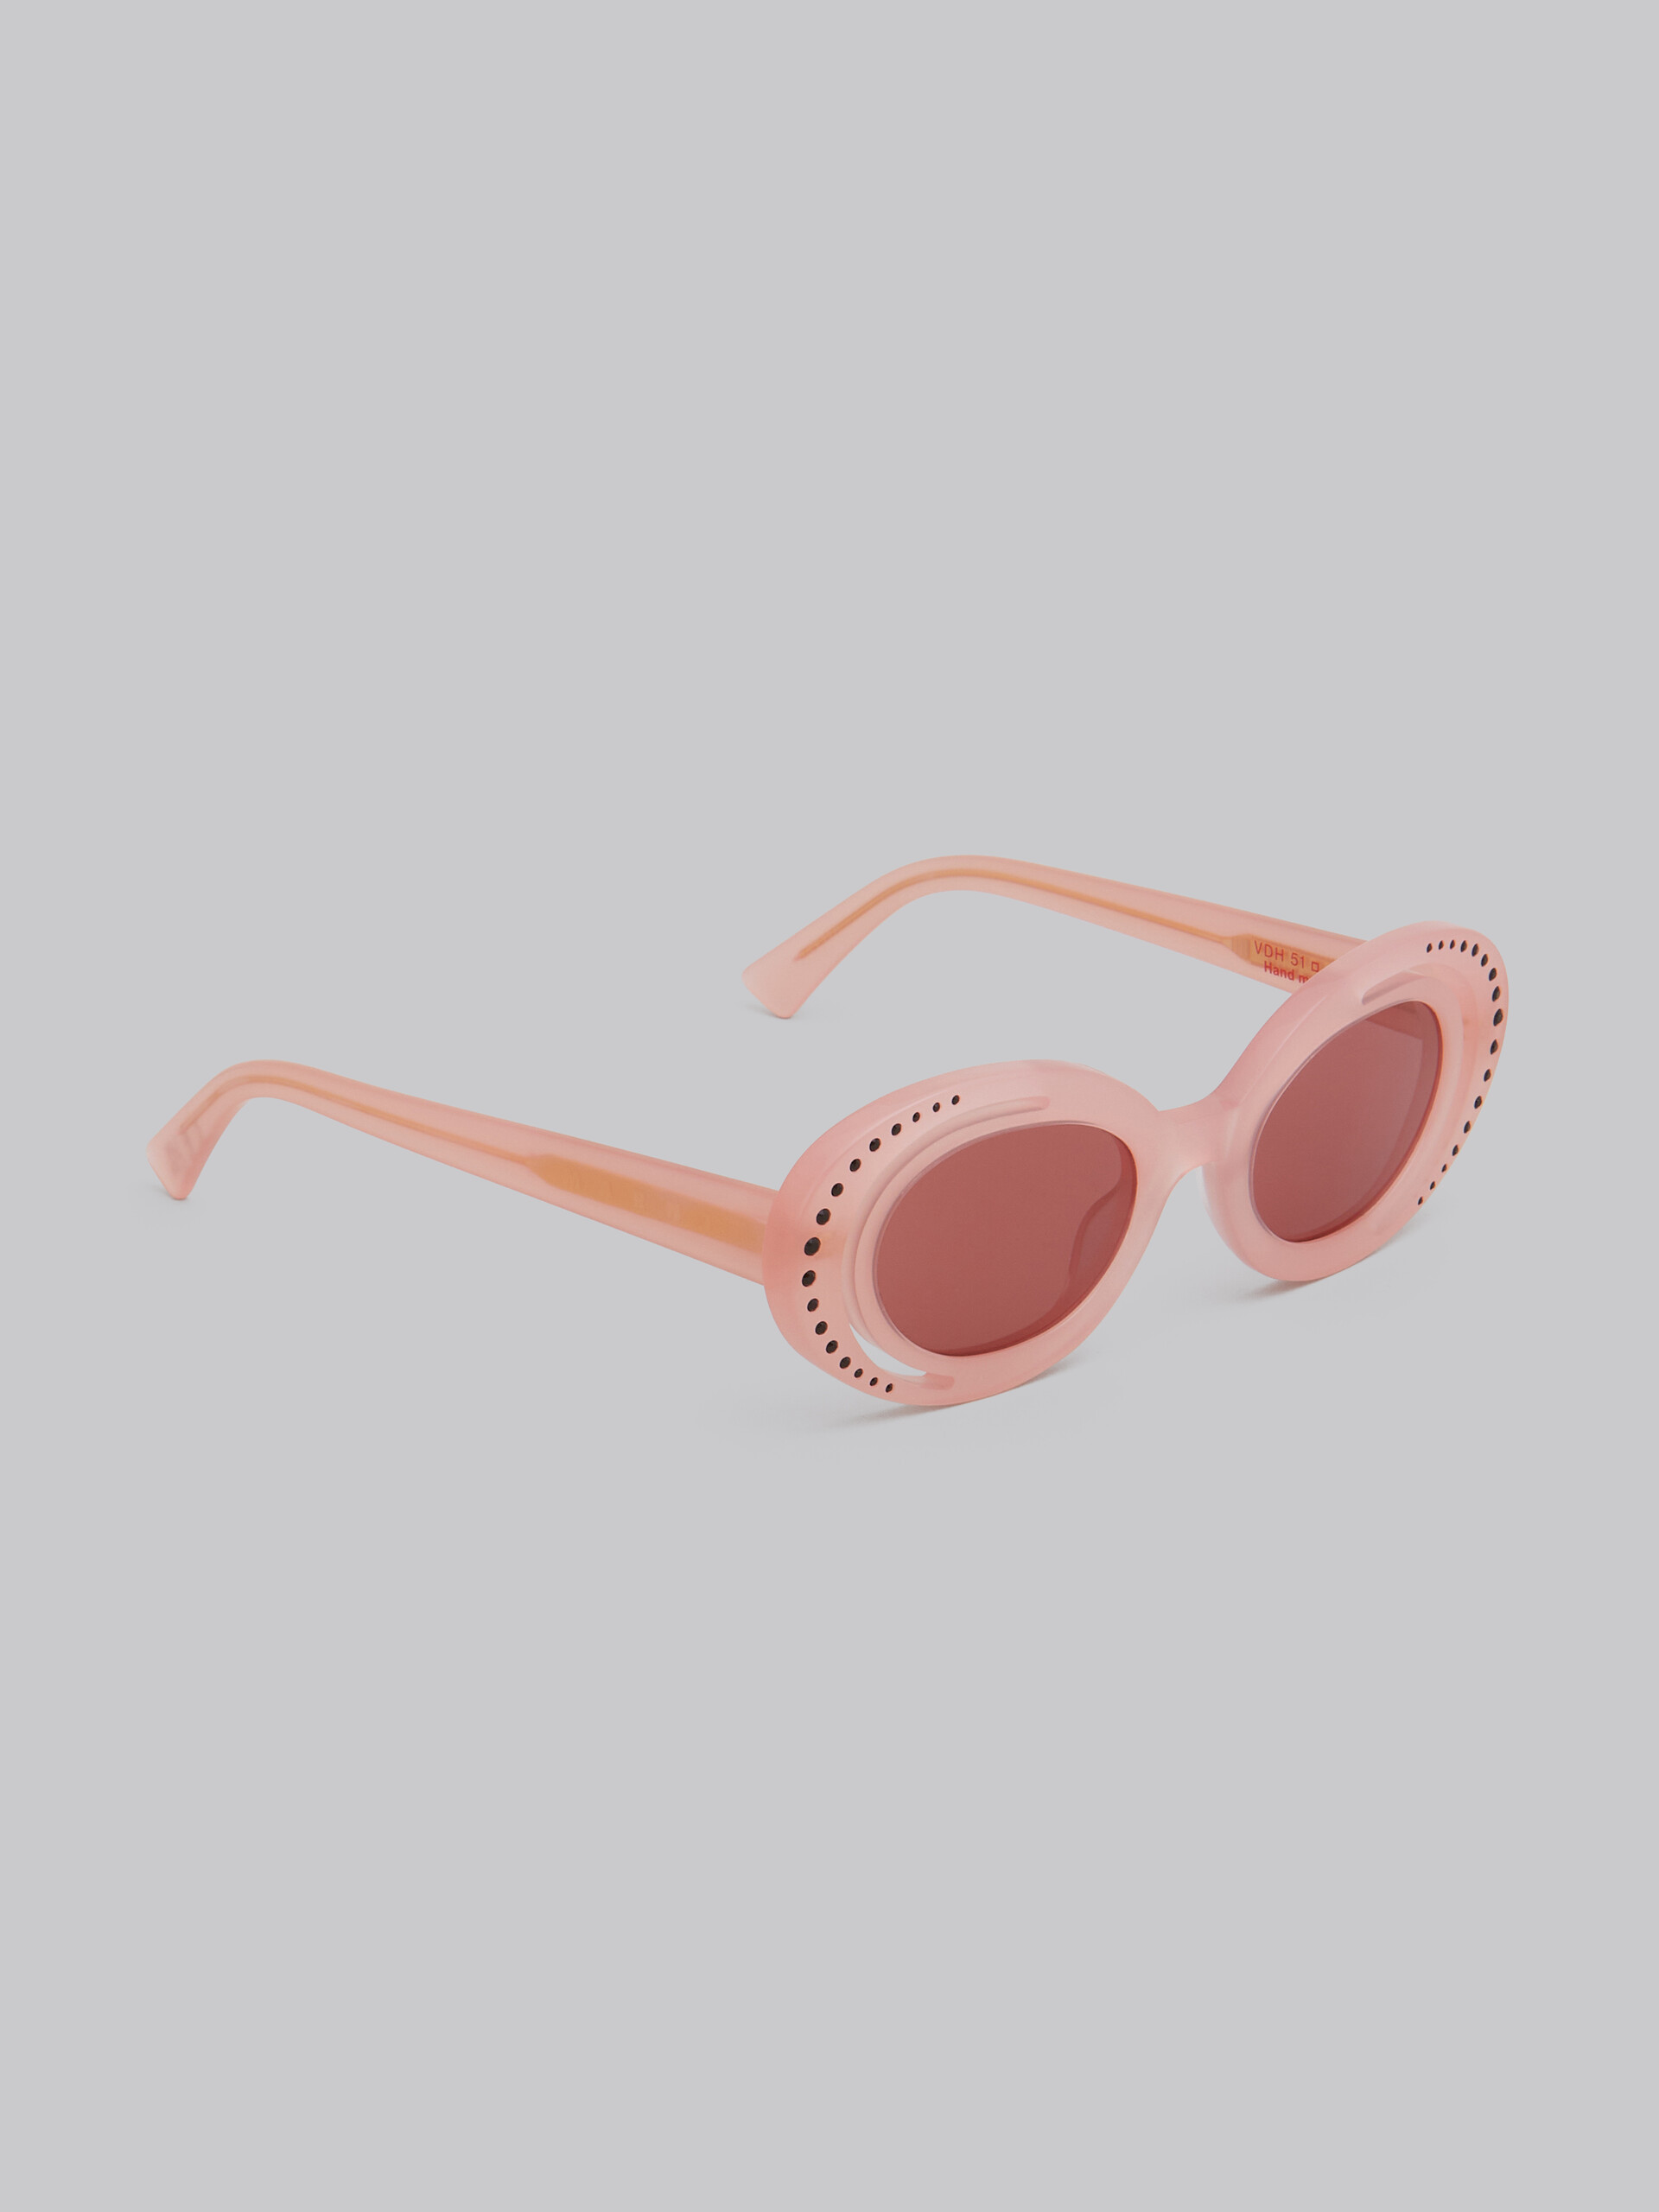 Gafas de sol color rosa empolvado Zion Canyon - óptica - Image 2